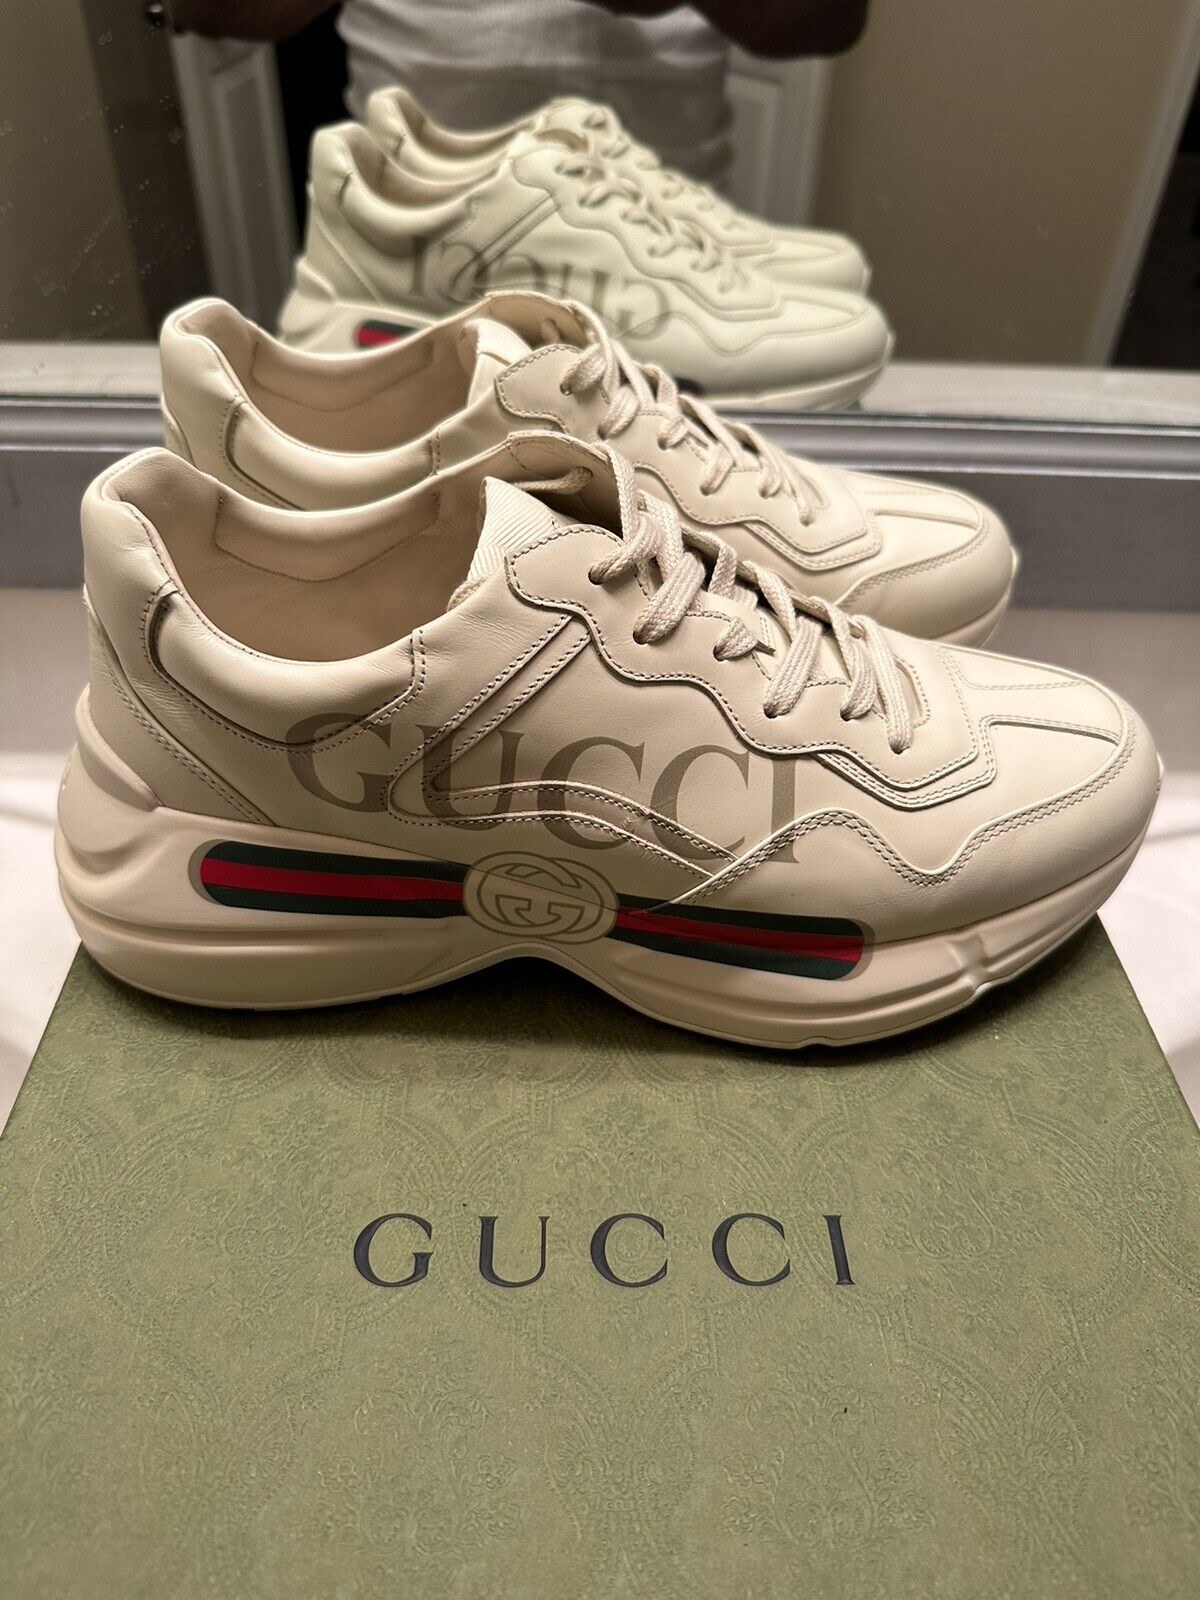 Gucci shoes 8 - Gem